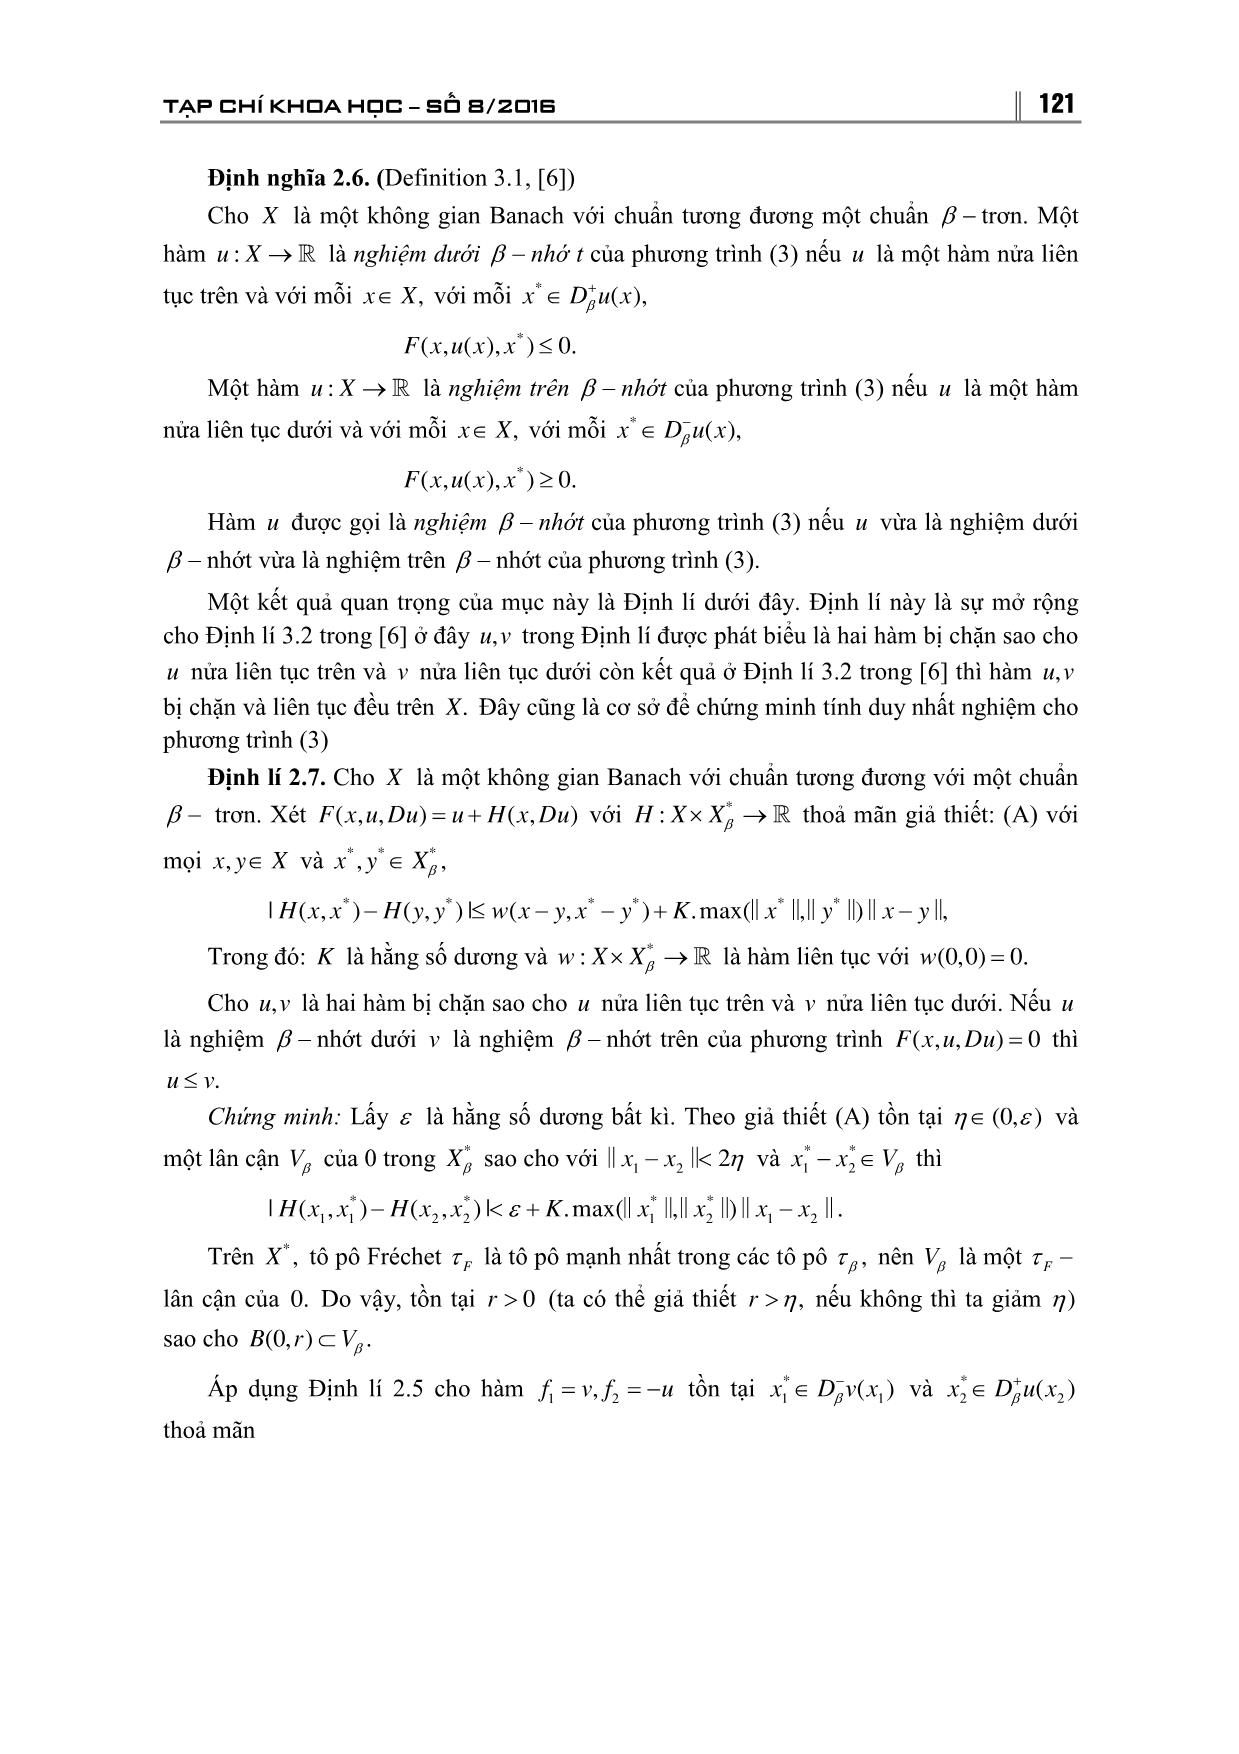 Tính duy nhất nghiệm của β - Nhớt của phương trình Hamilton-Jacobi trong không gian Banach trang 7